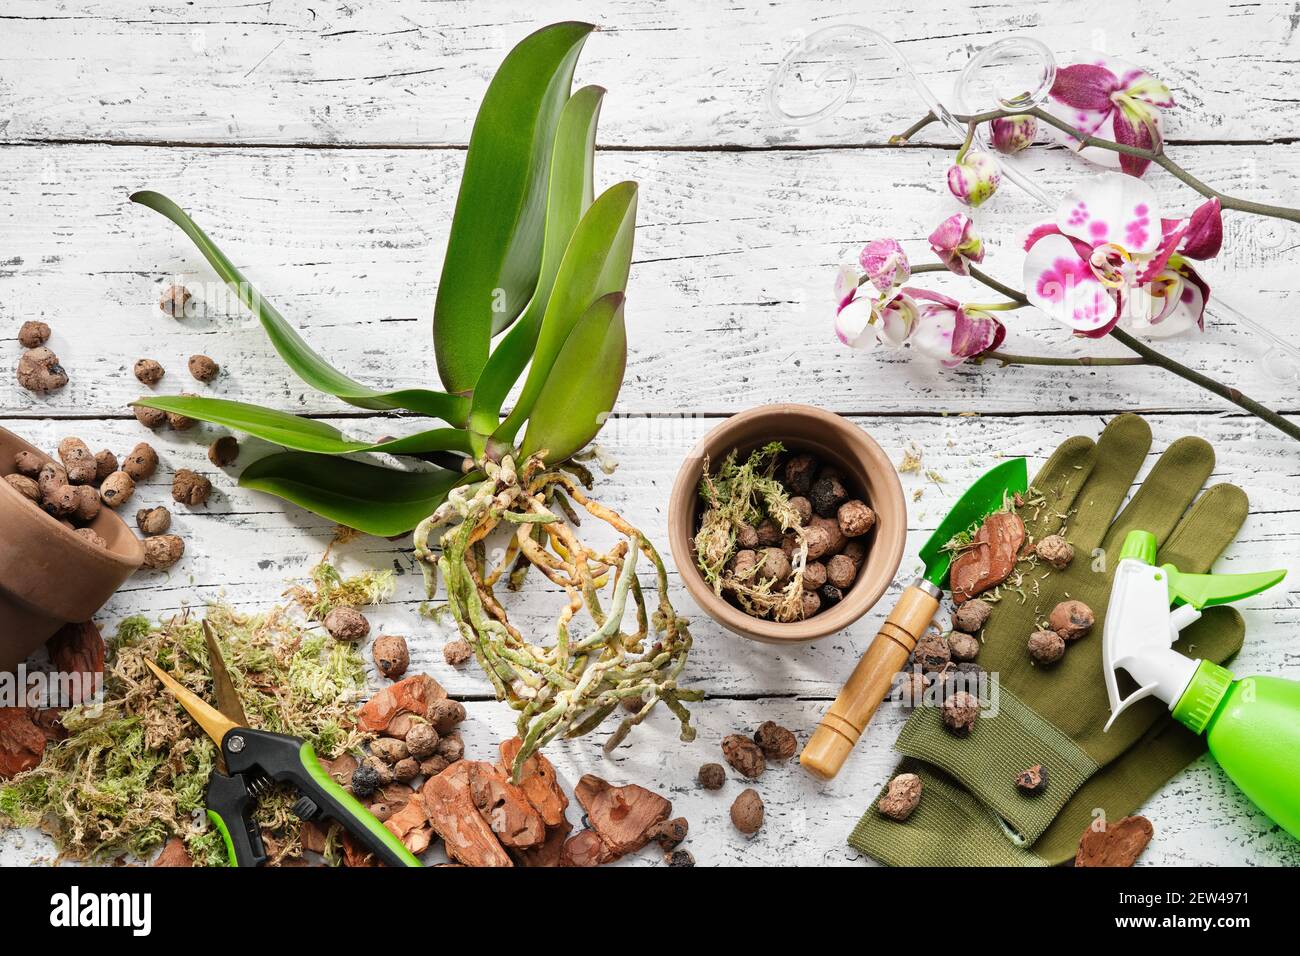 Blumentöpfe, Kiefernrinde, Blähton, Moos und Schaufel zum Pflanzen von Orchideen in einem Topf, Sprühflasche und Gartenscheren auf dem Tisch. Draufsicht. Stockfoto